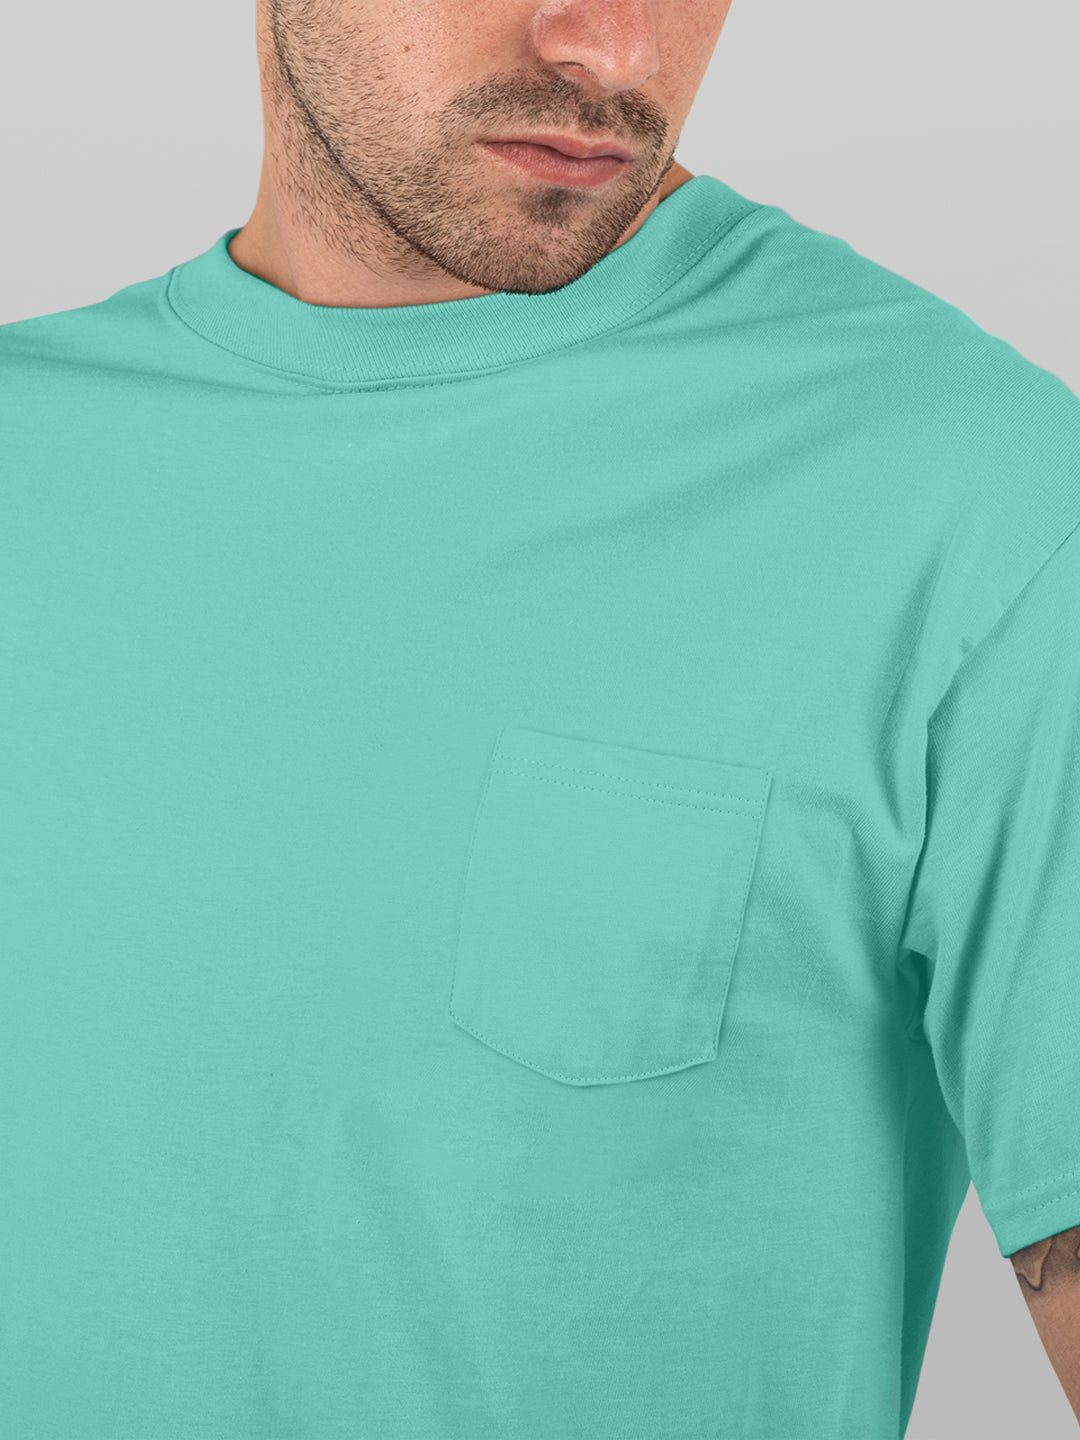 Supersoft 100% Cotton T-Shirt : Green